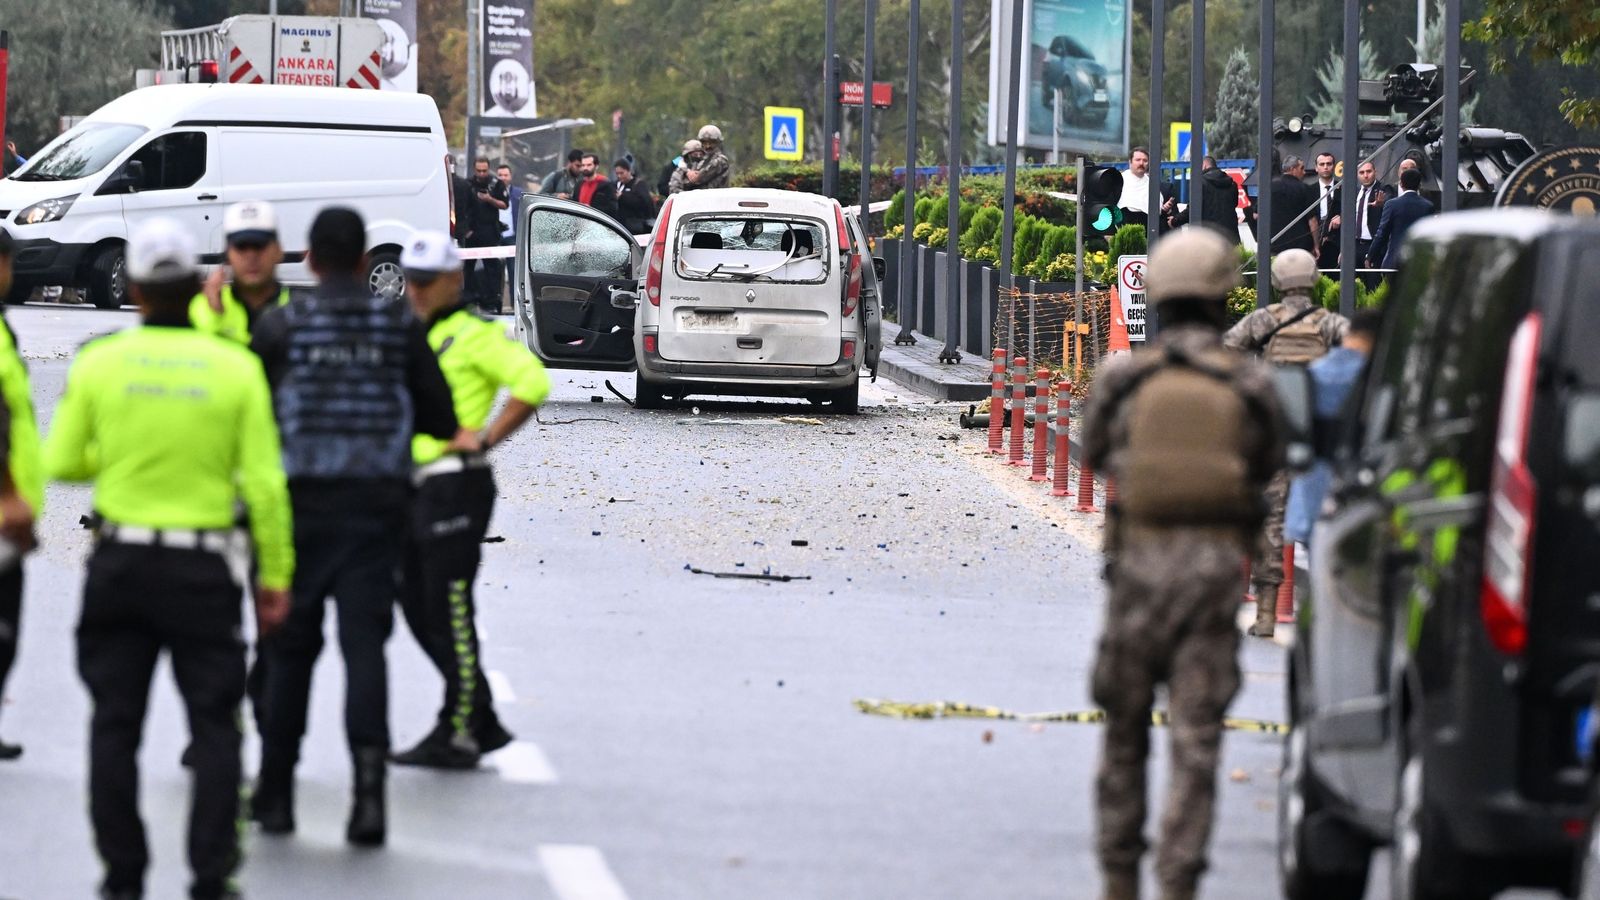 Türkiye: Ataque suicida en Ankara – el PKK se atribuye la responsabilidad